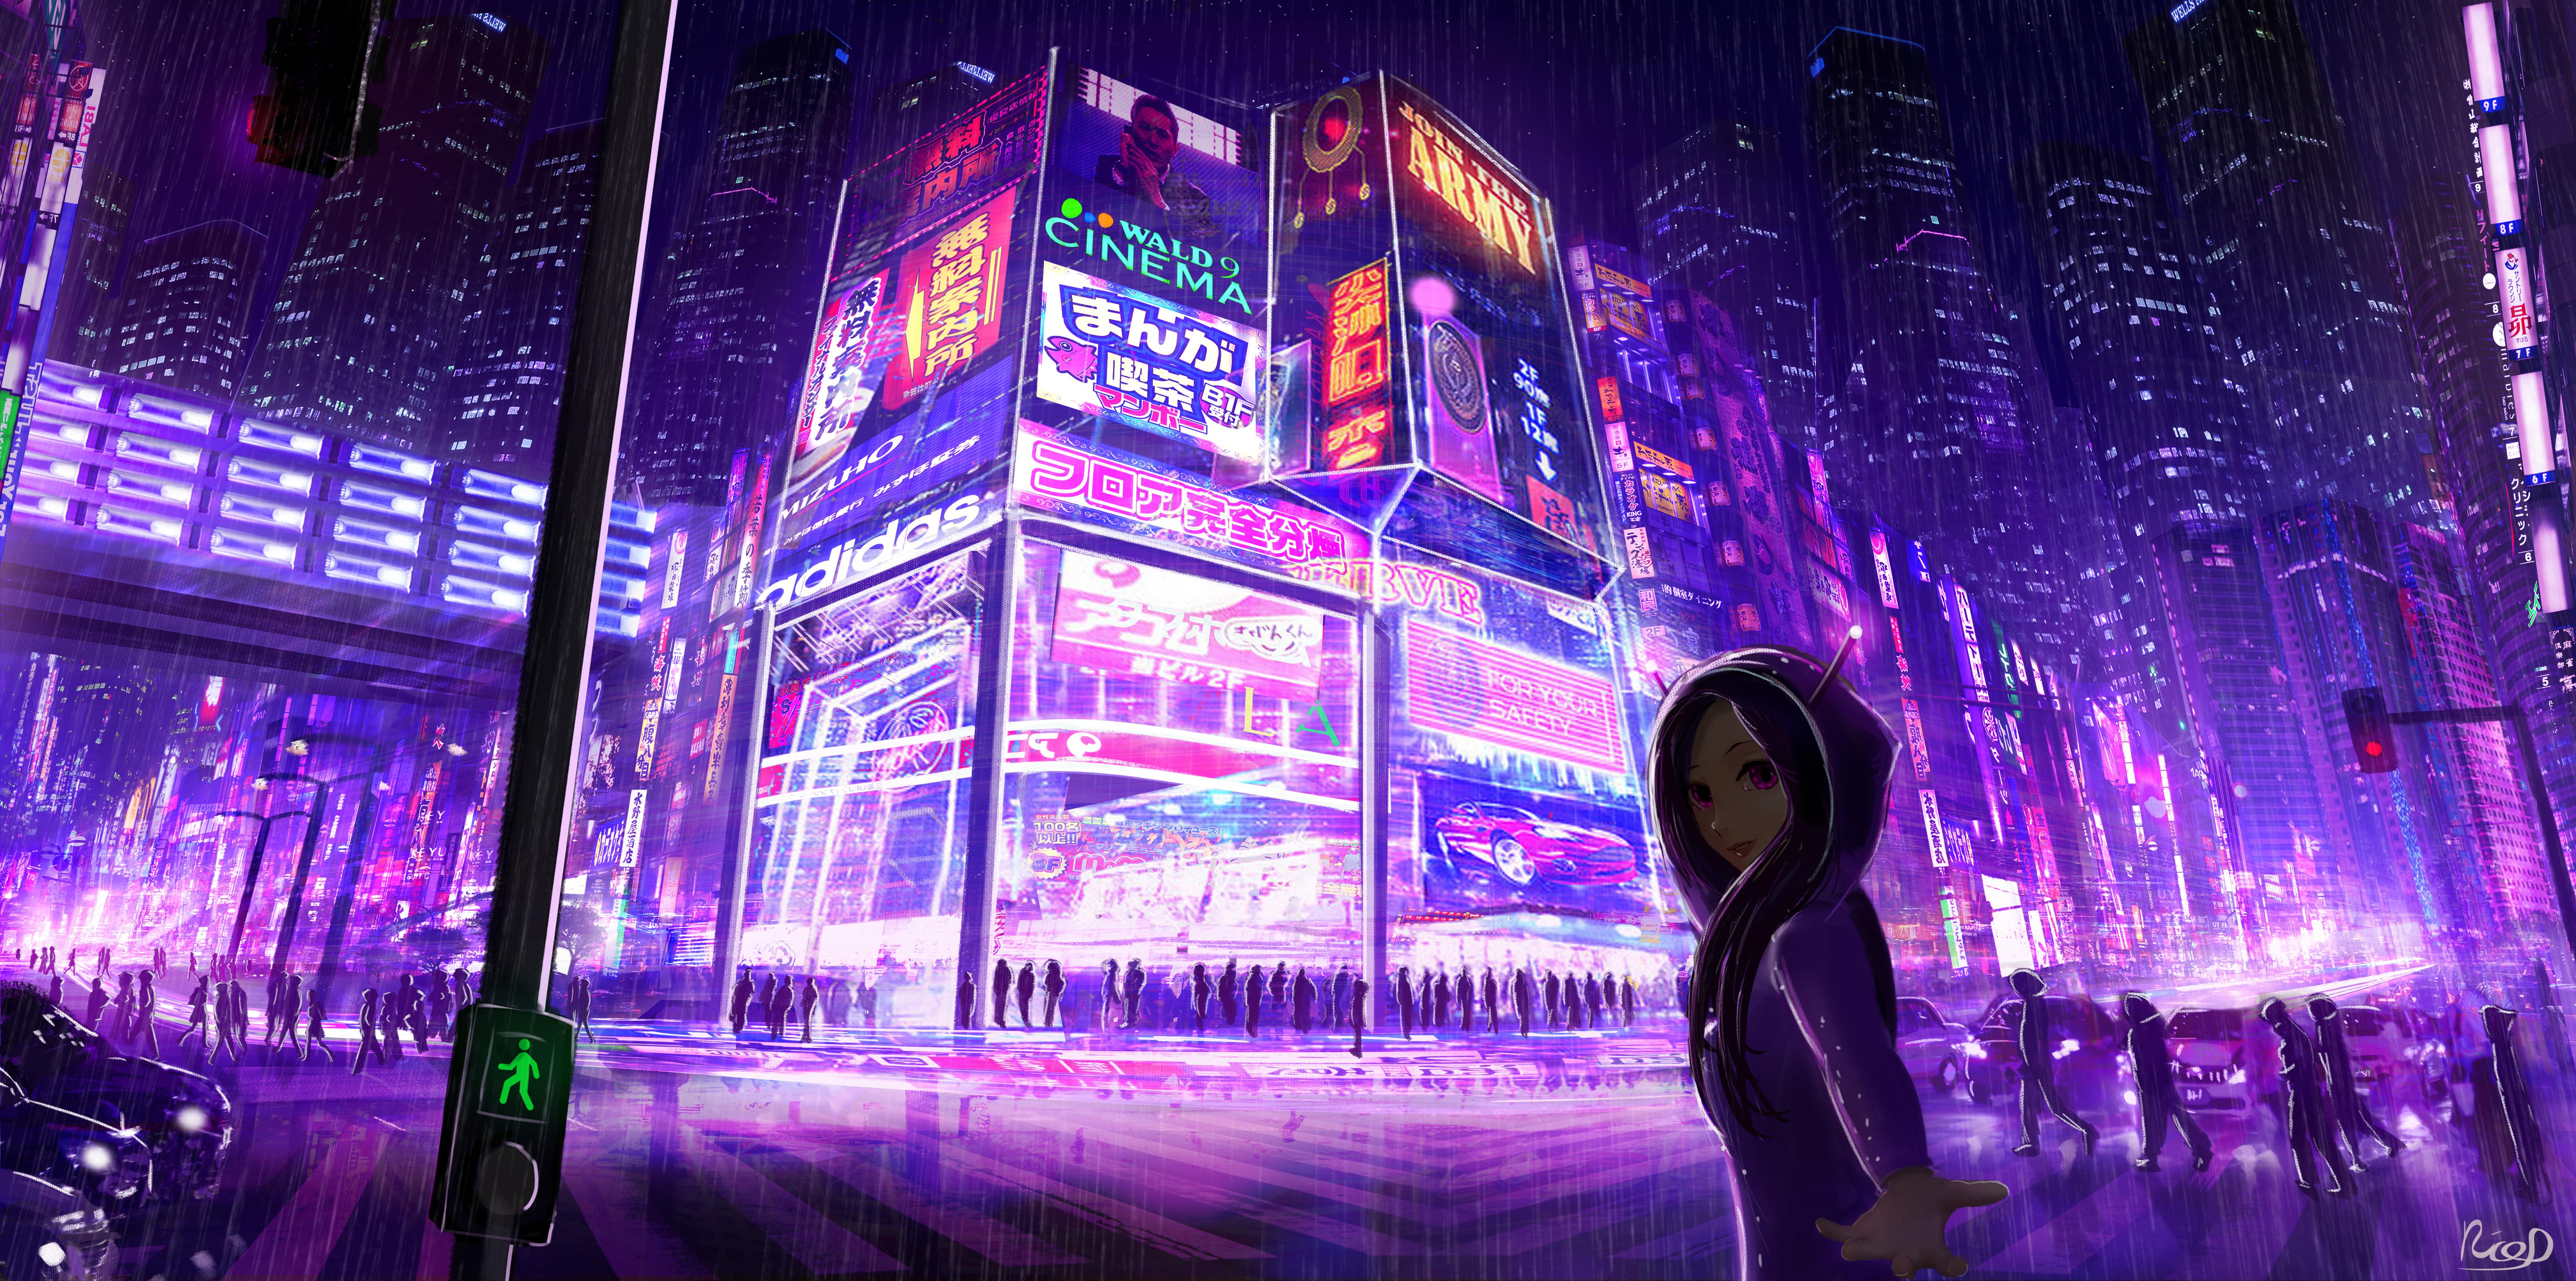 6290 x 3128 · jpeg - Cyberpunk Cityscape Girl Digital Art, HD Artist, 4k Wallpapers, Images ...